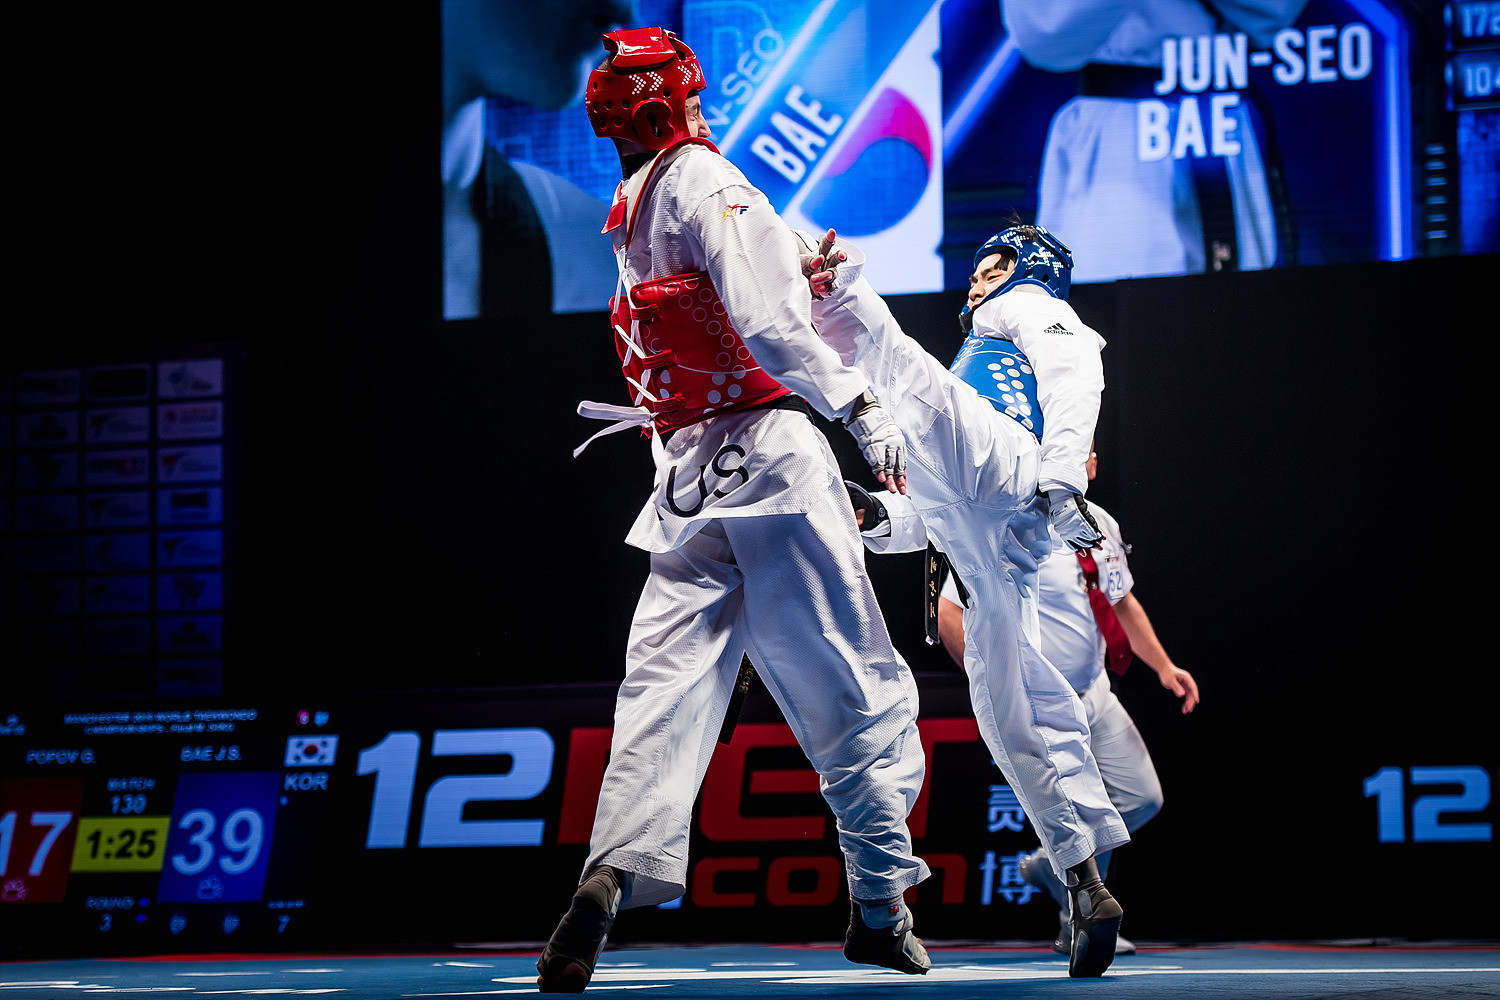 Bae Jun-seo won his maiden world title in Manchester in March ©World Taekwondo